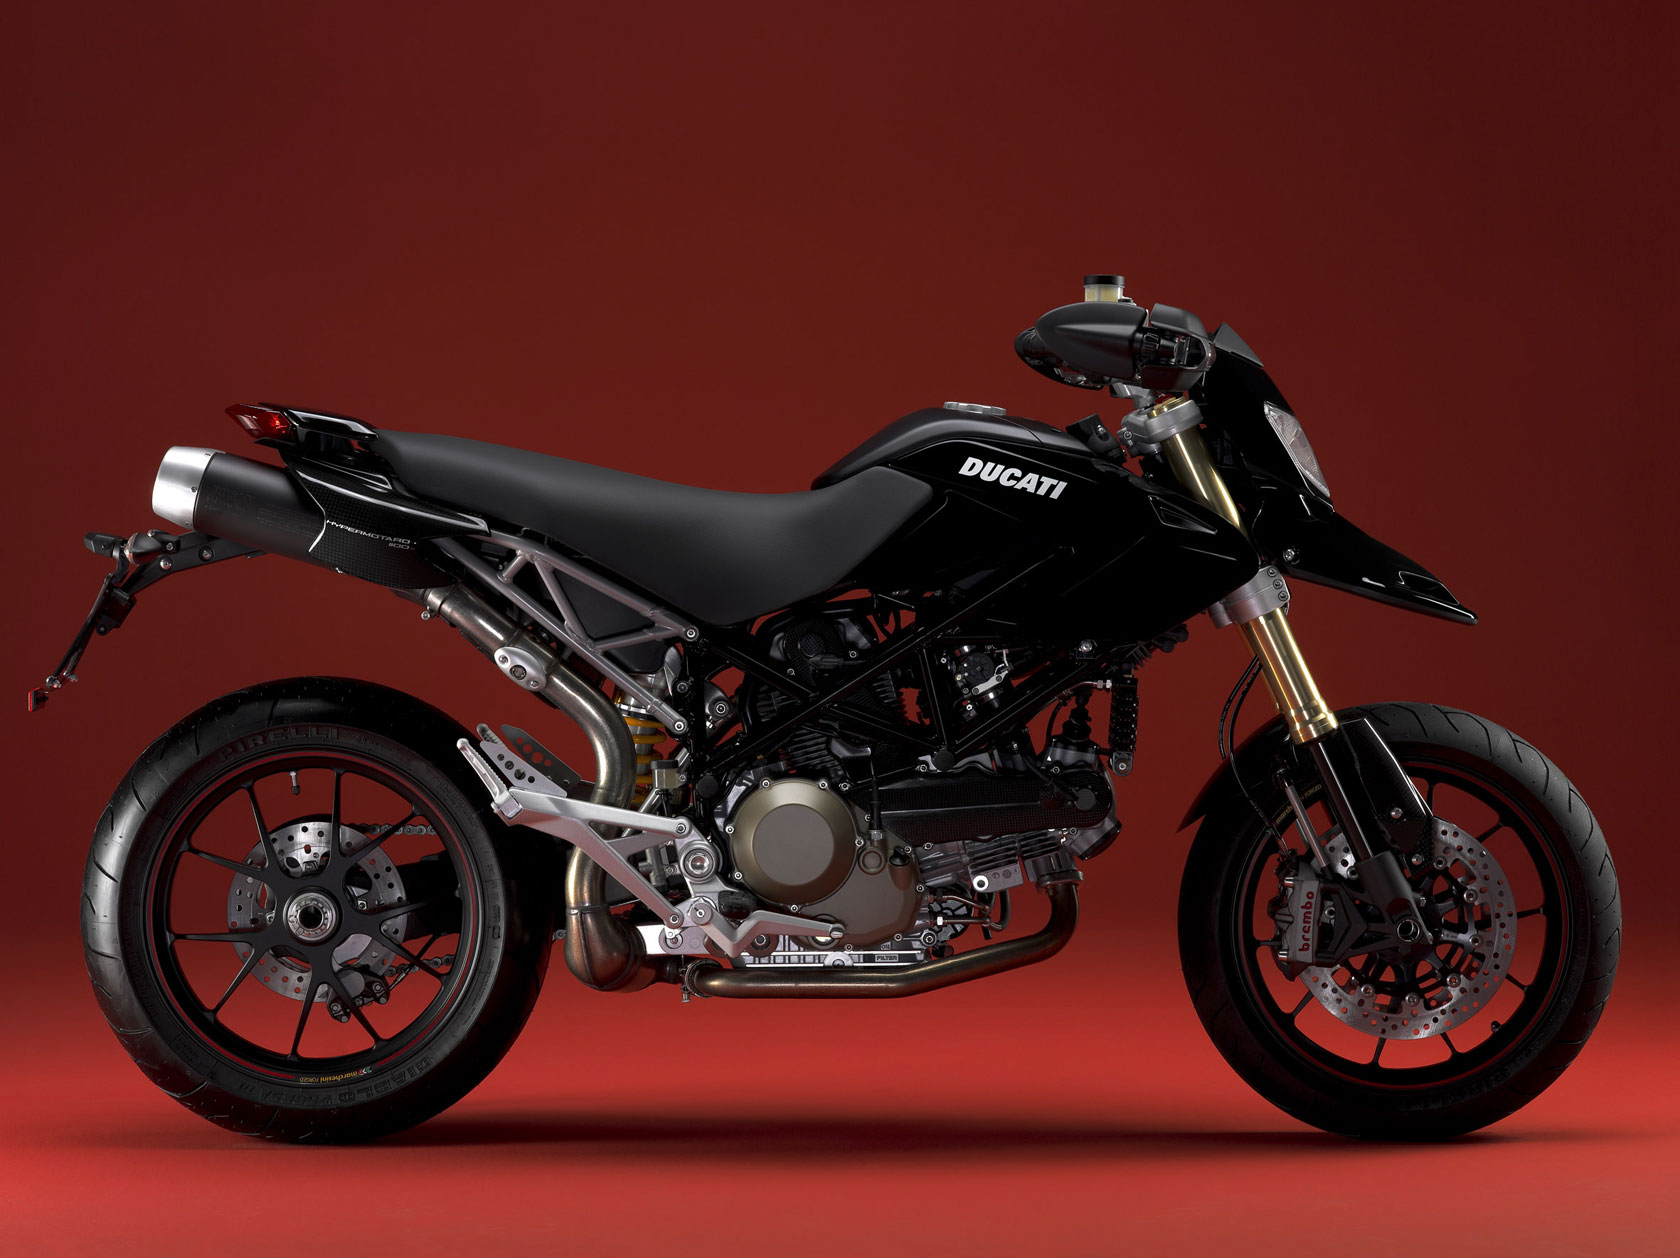 2009 Ducati Hypermotard 1100 S